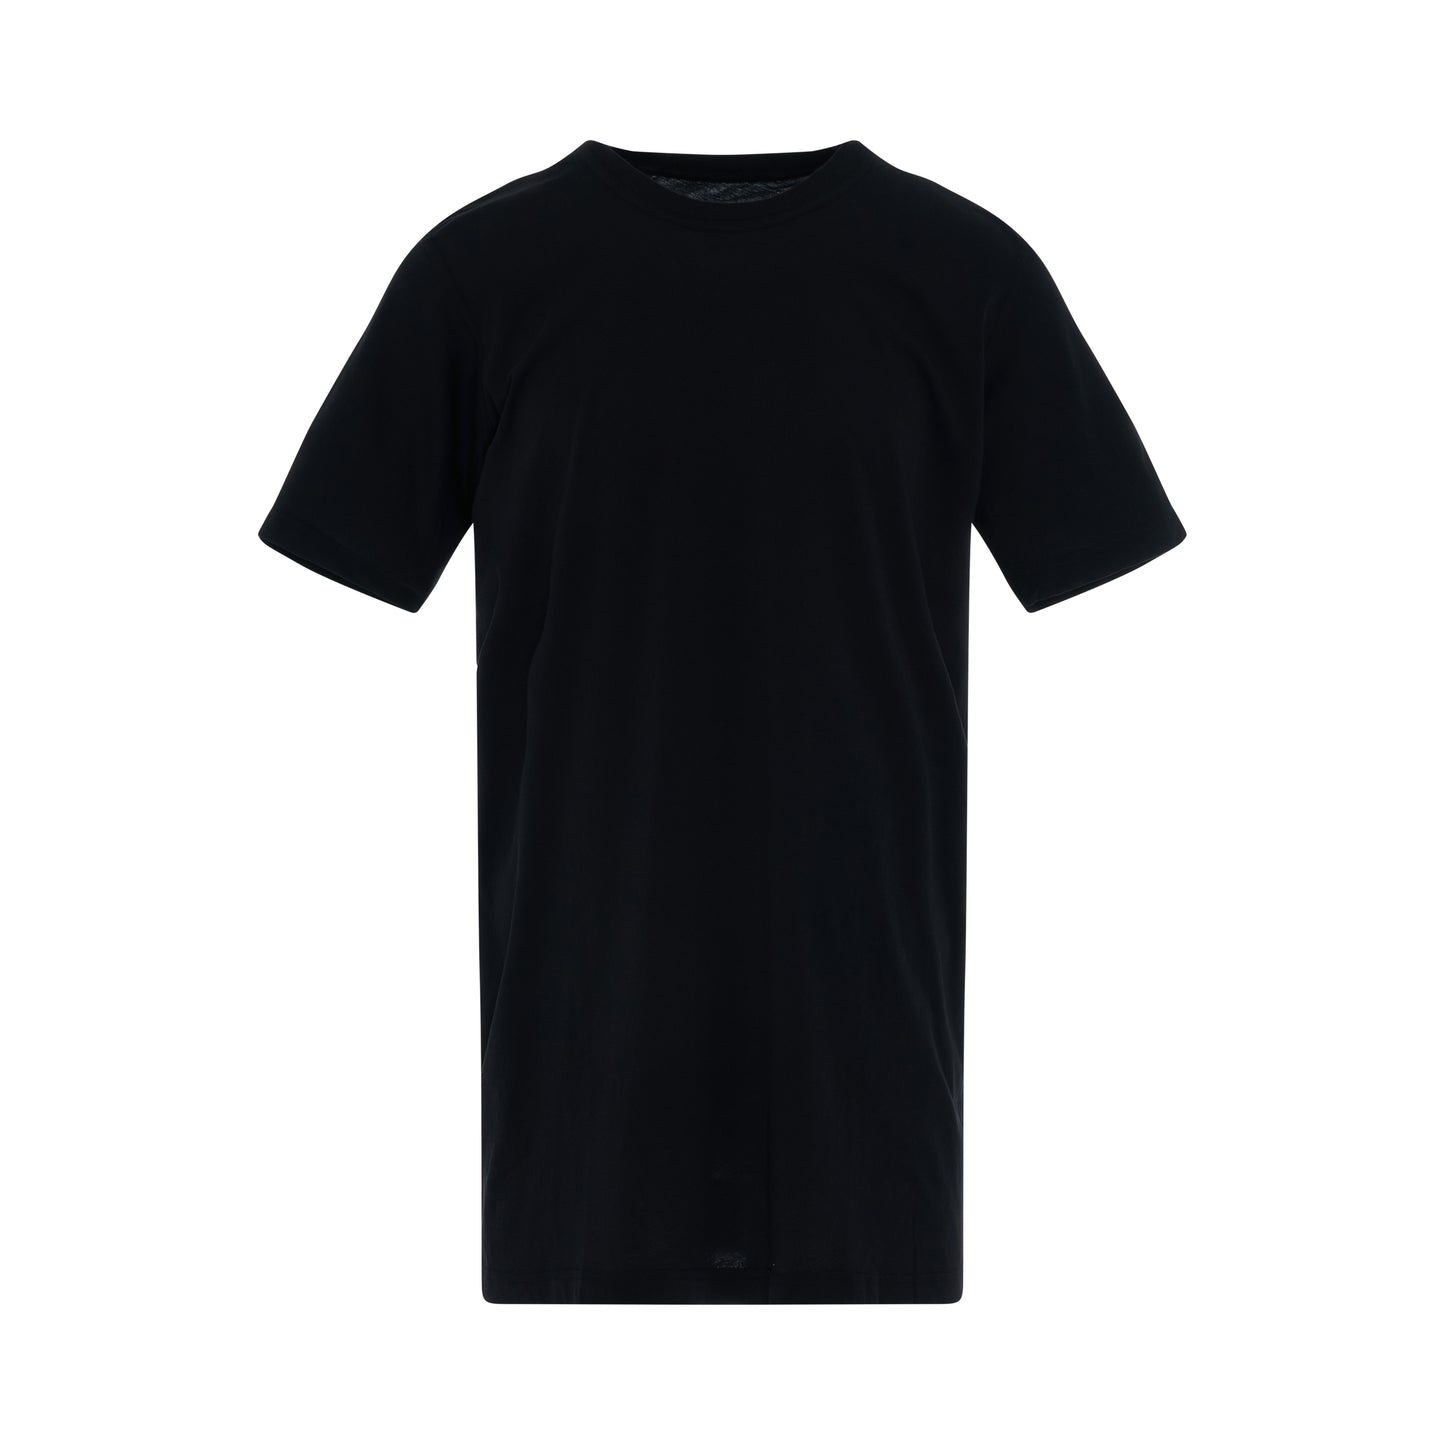 Middlefinger T-Shirt in Black